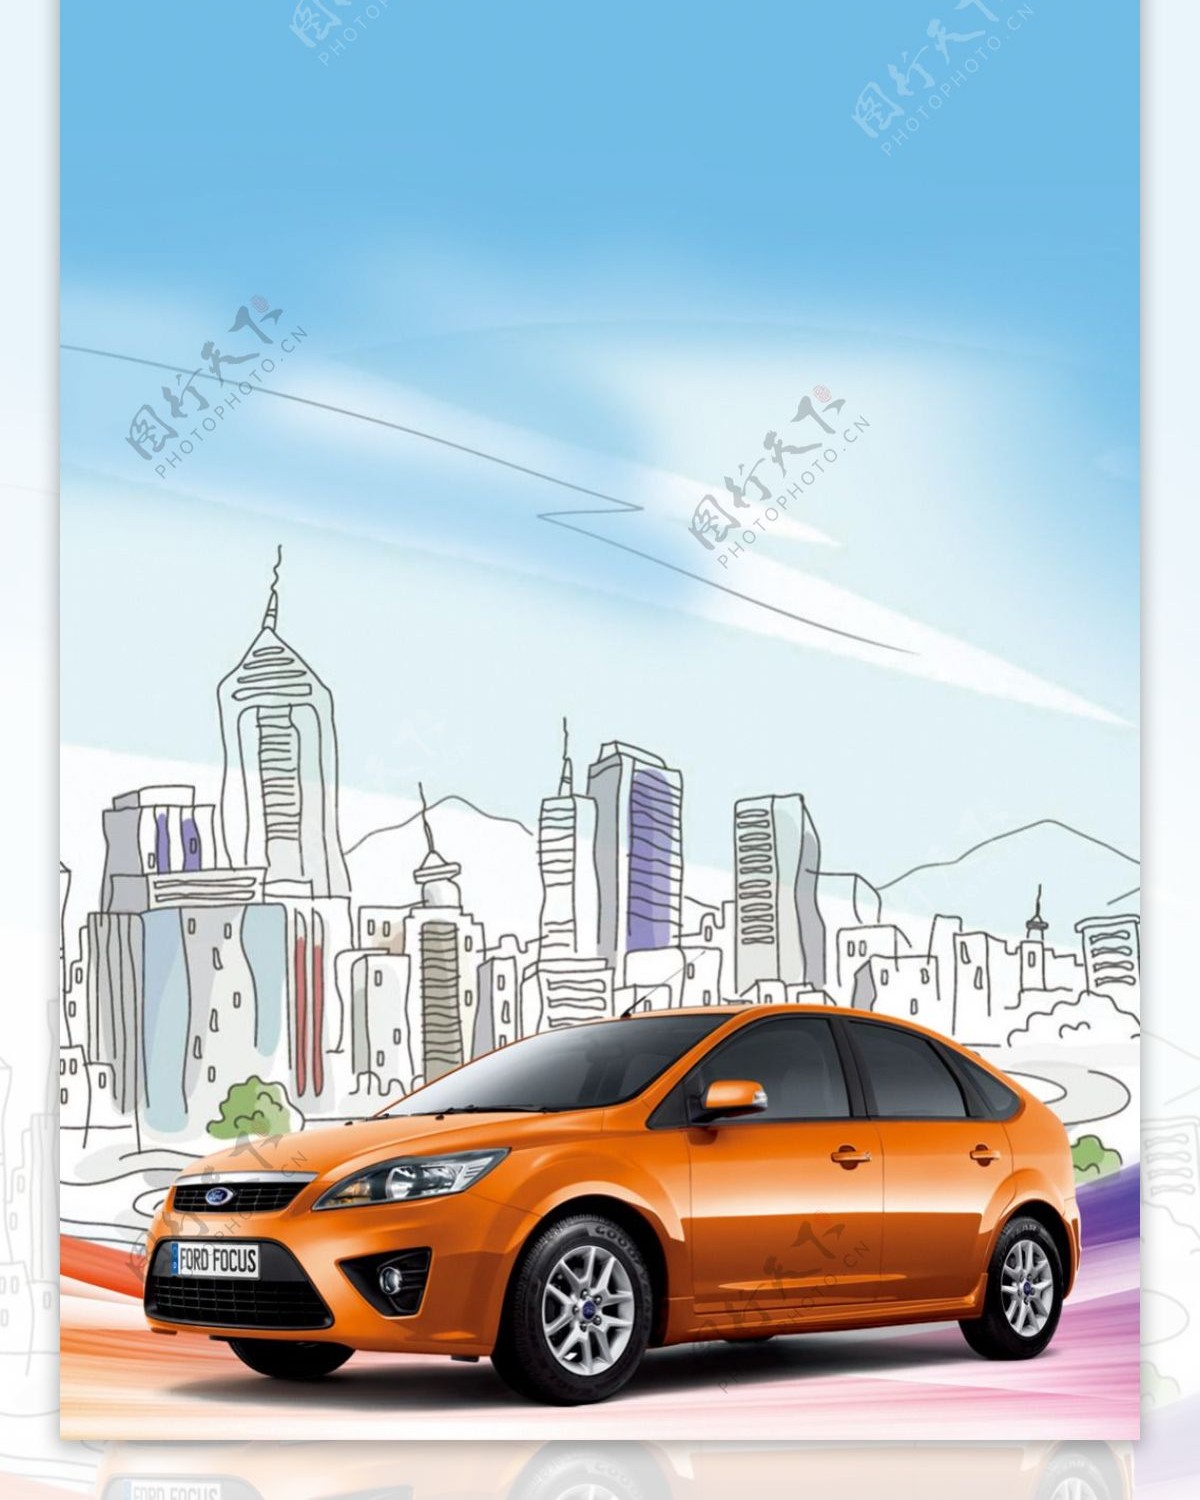 福特汽车精美设计展架模板素材海报画面设计